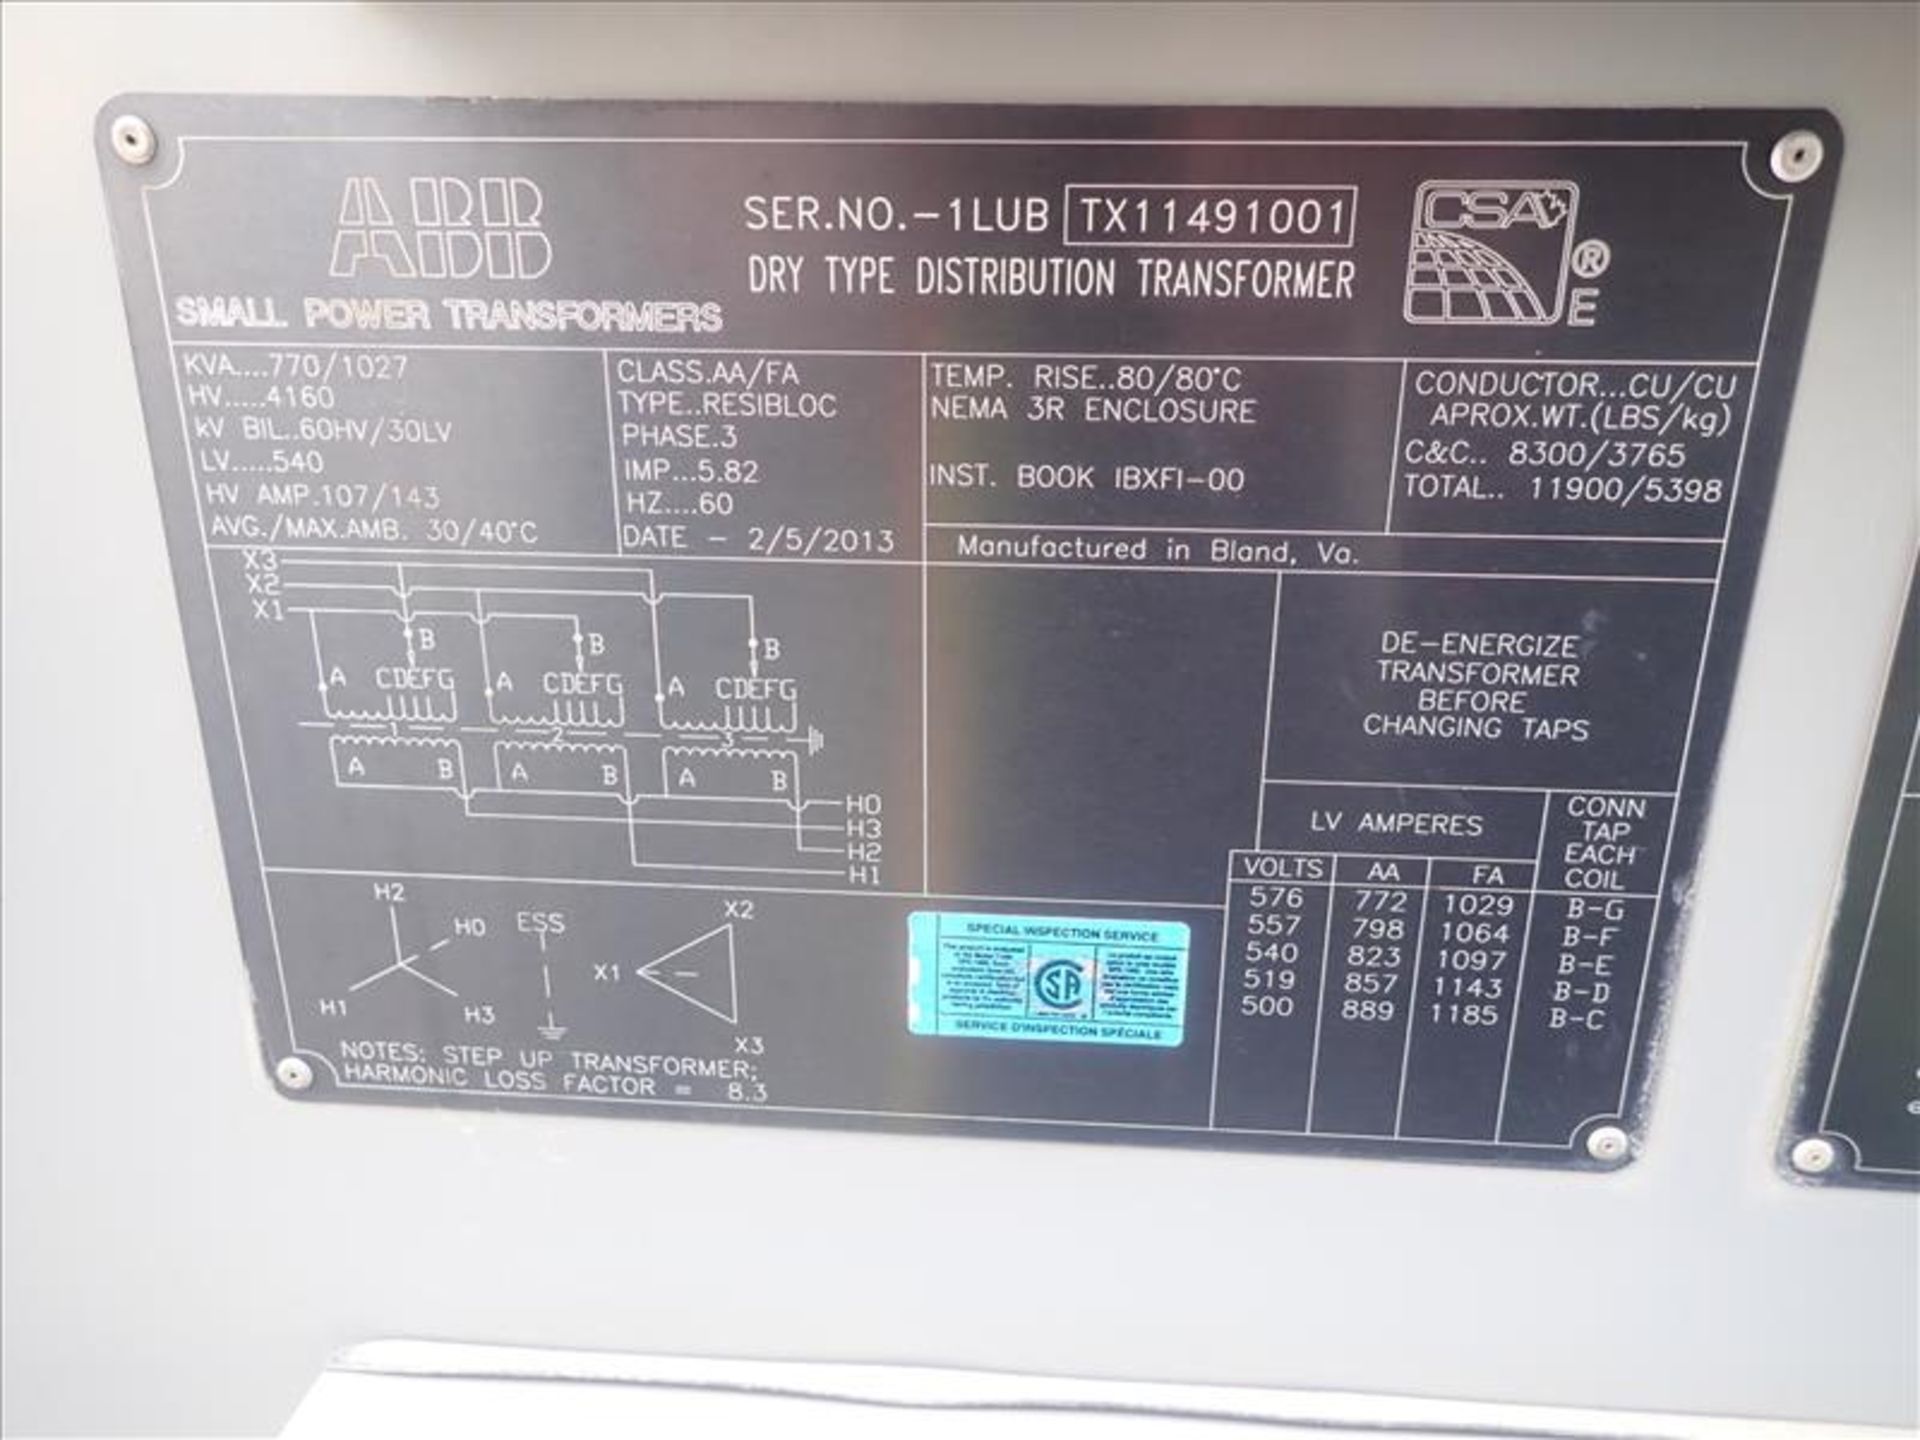 ABB Dry-Type Distribution Transformer, ser. no. 1LUB-TX11491001 (2013), 770/1027KVA, 60Hz, 3Ph, - Image 4 of 4